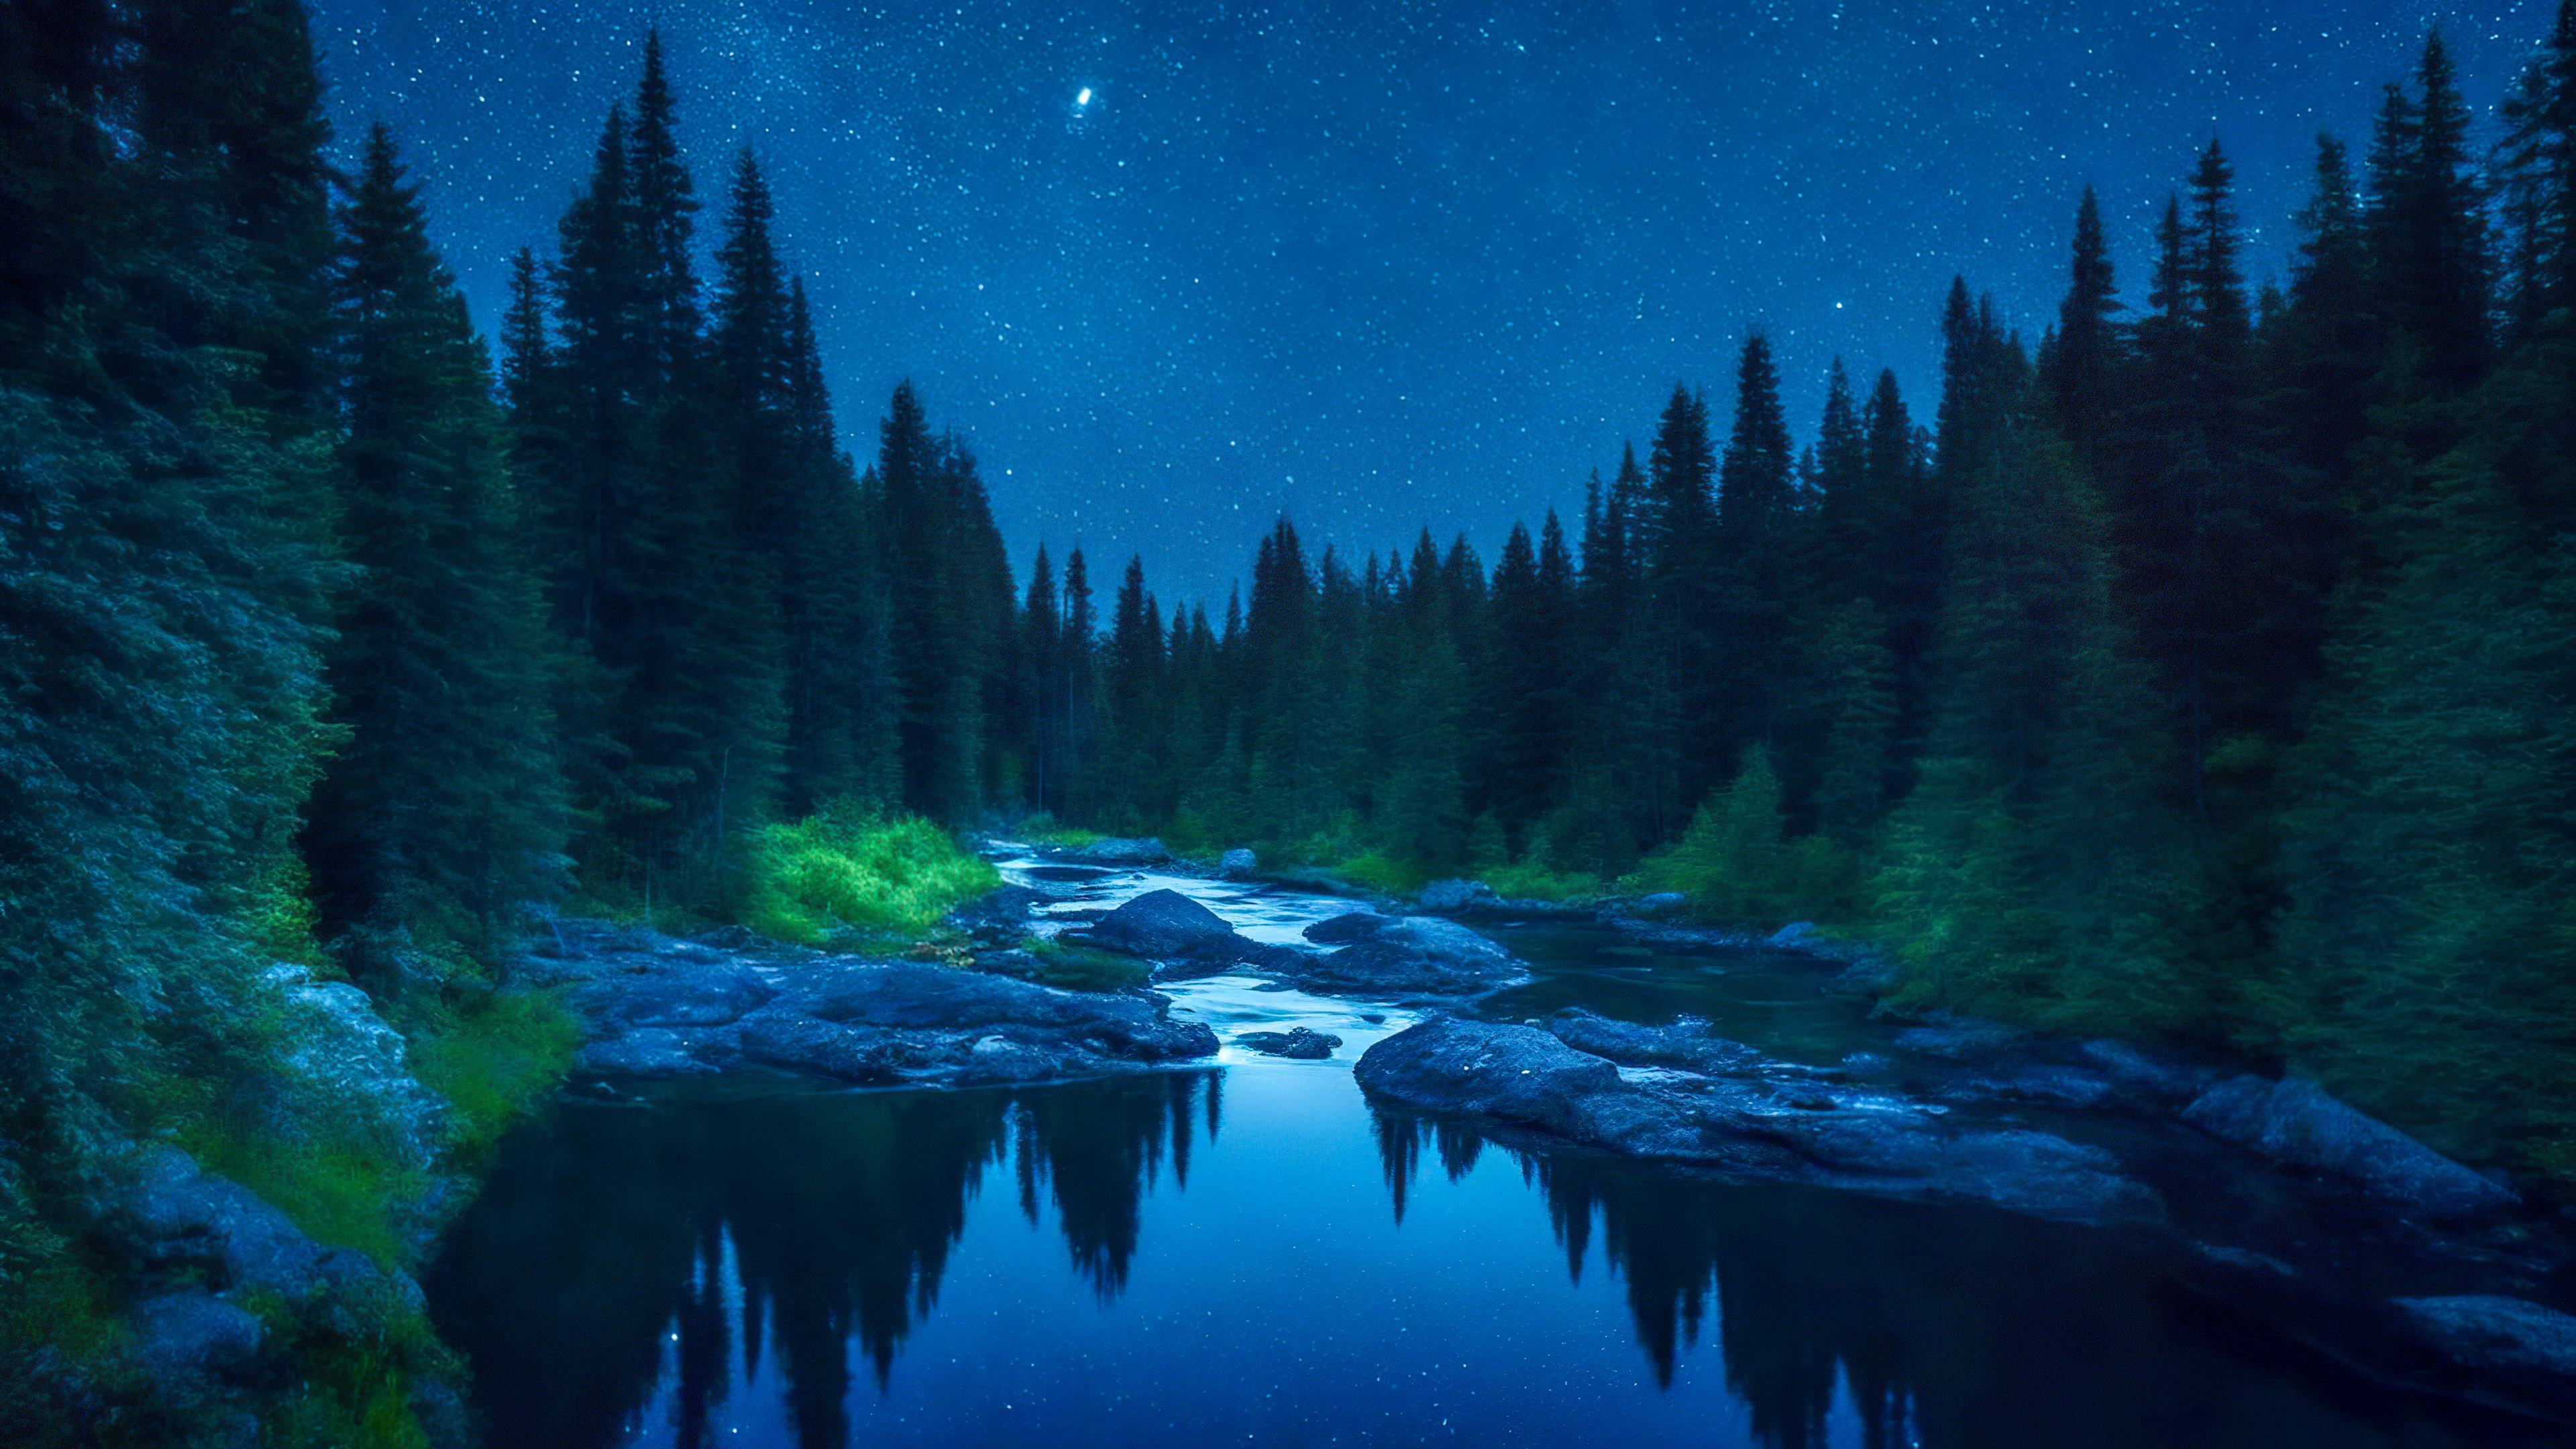 Laissez-vous hypnotiser par notre fond d'écran de paysage forestier, mettant en scène une rivière paisible serpentant à travers une forêt dense, reflétant le ciel nocturne scintillant.